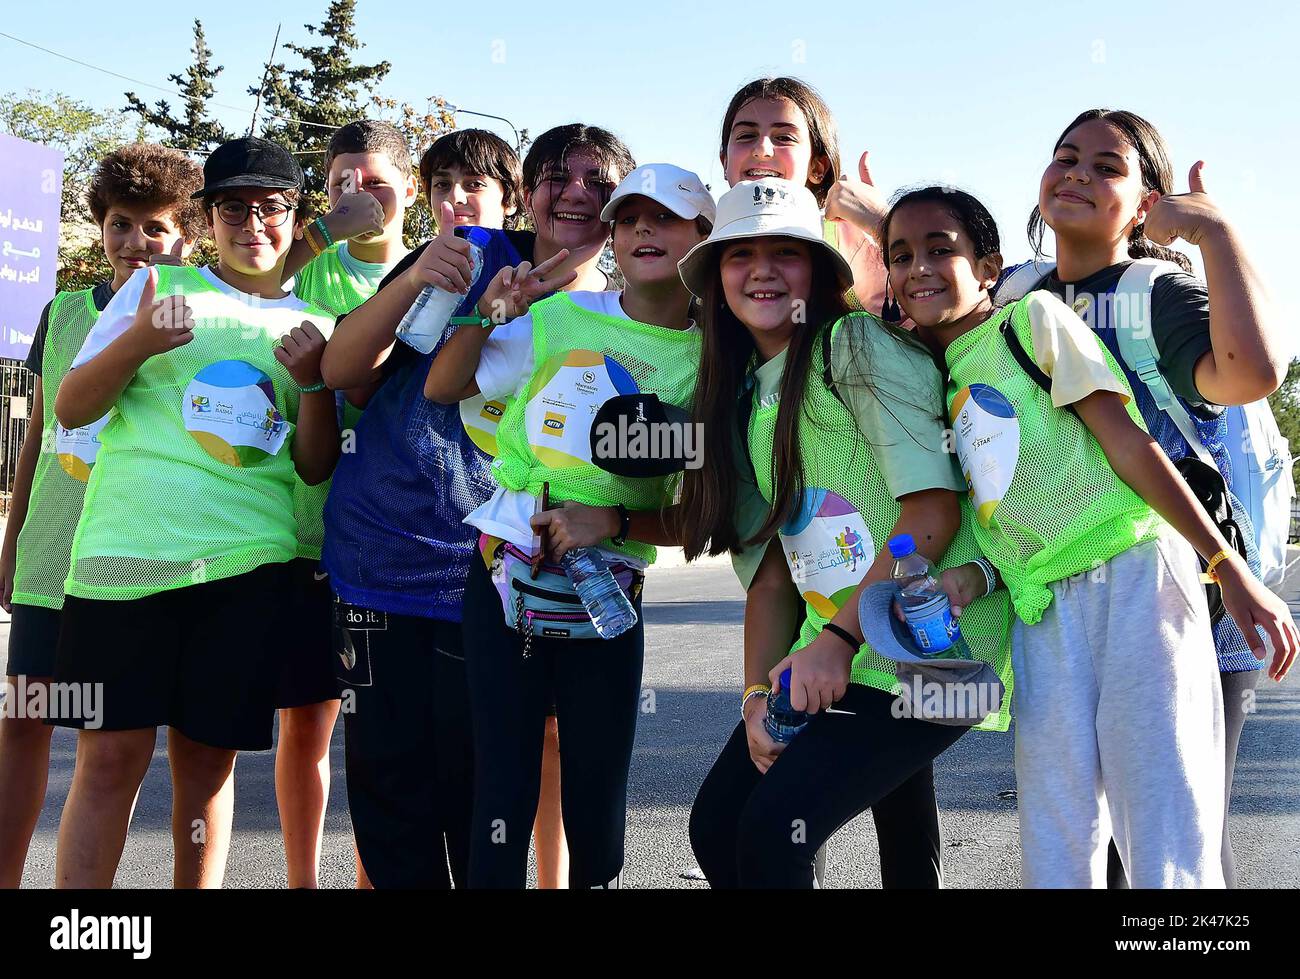 Damaskus, Syrien. 30. September 2022. Kinder posieren für Fotos während einer Laufveranstaltung zur Unterstützung einer Wohltätigkeitsorganisation für krebskranke Kinder in Damaskus, der Hauptstadt Syriens, am 30. September 2022. Quelle: Ammar Safarjalani/Xinhua/Alamy Live News Stockfoto